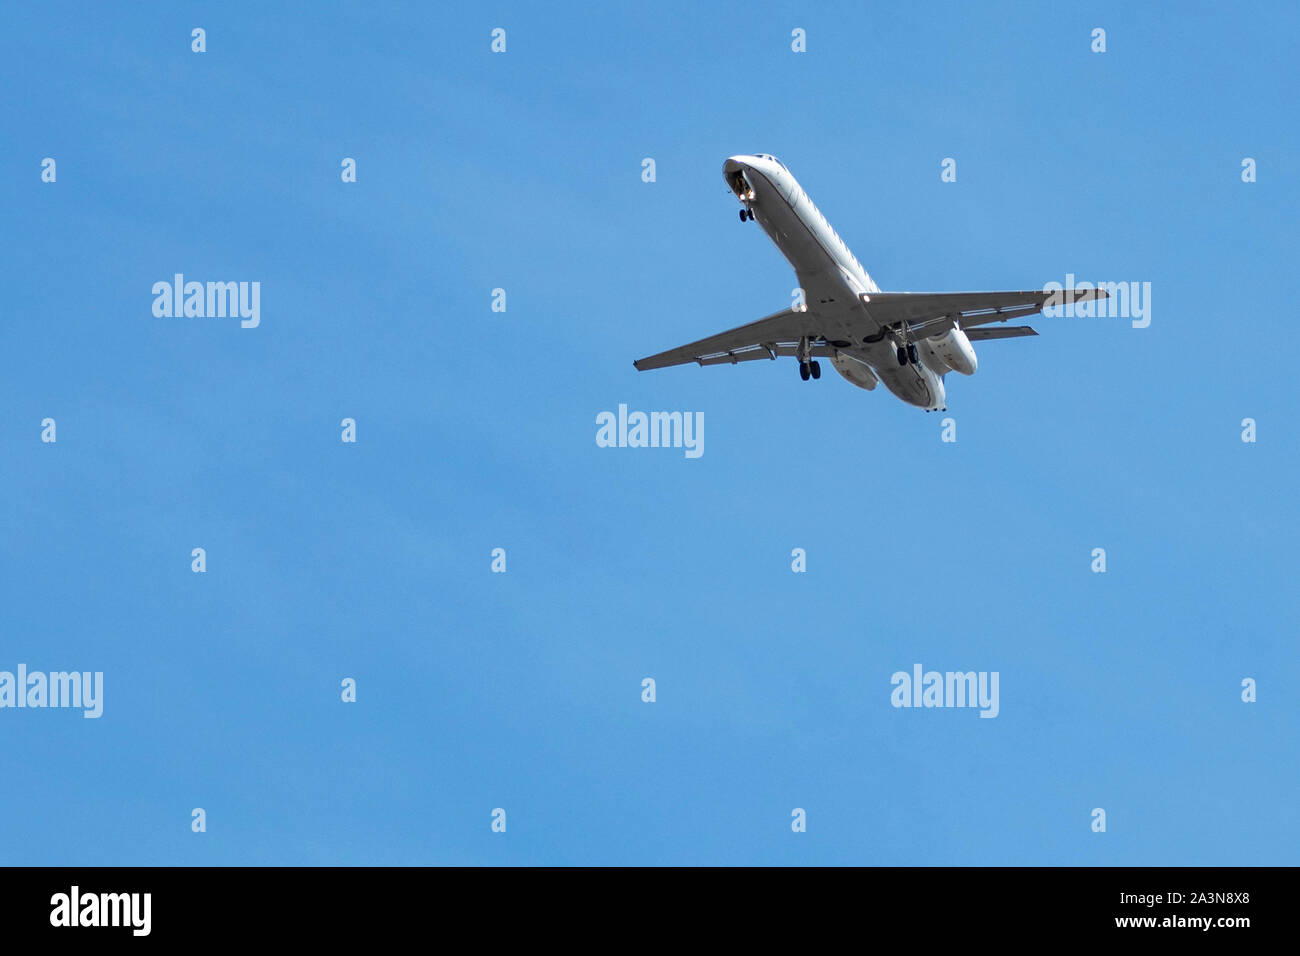 Unterseite des Embraer ERJ-145 Flugzeugs mit ausgefahrtem Fahrwerk Wie es Flughafen für die Landung nähert Stockfoto